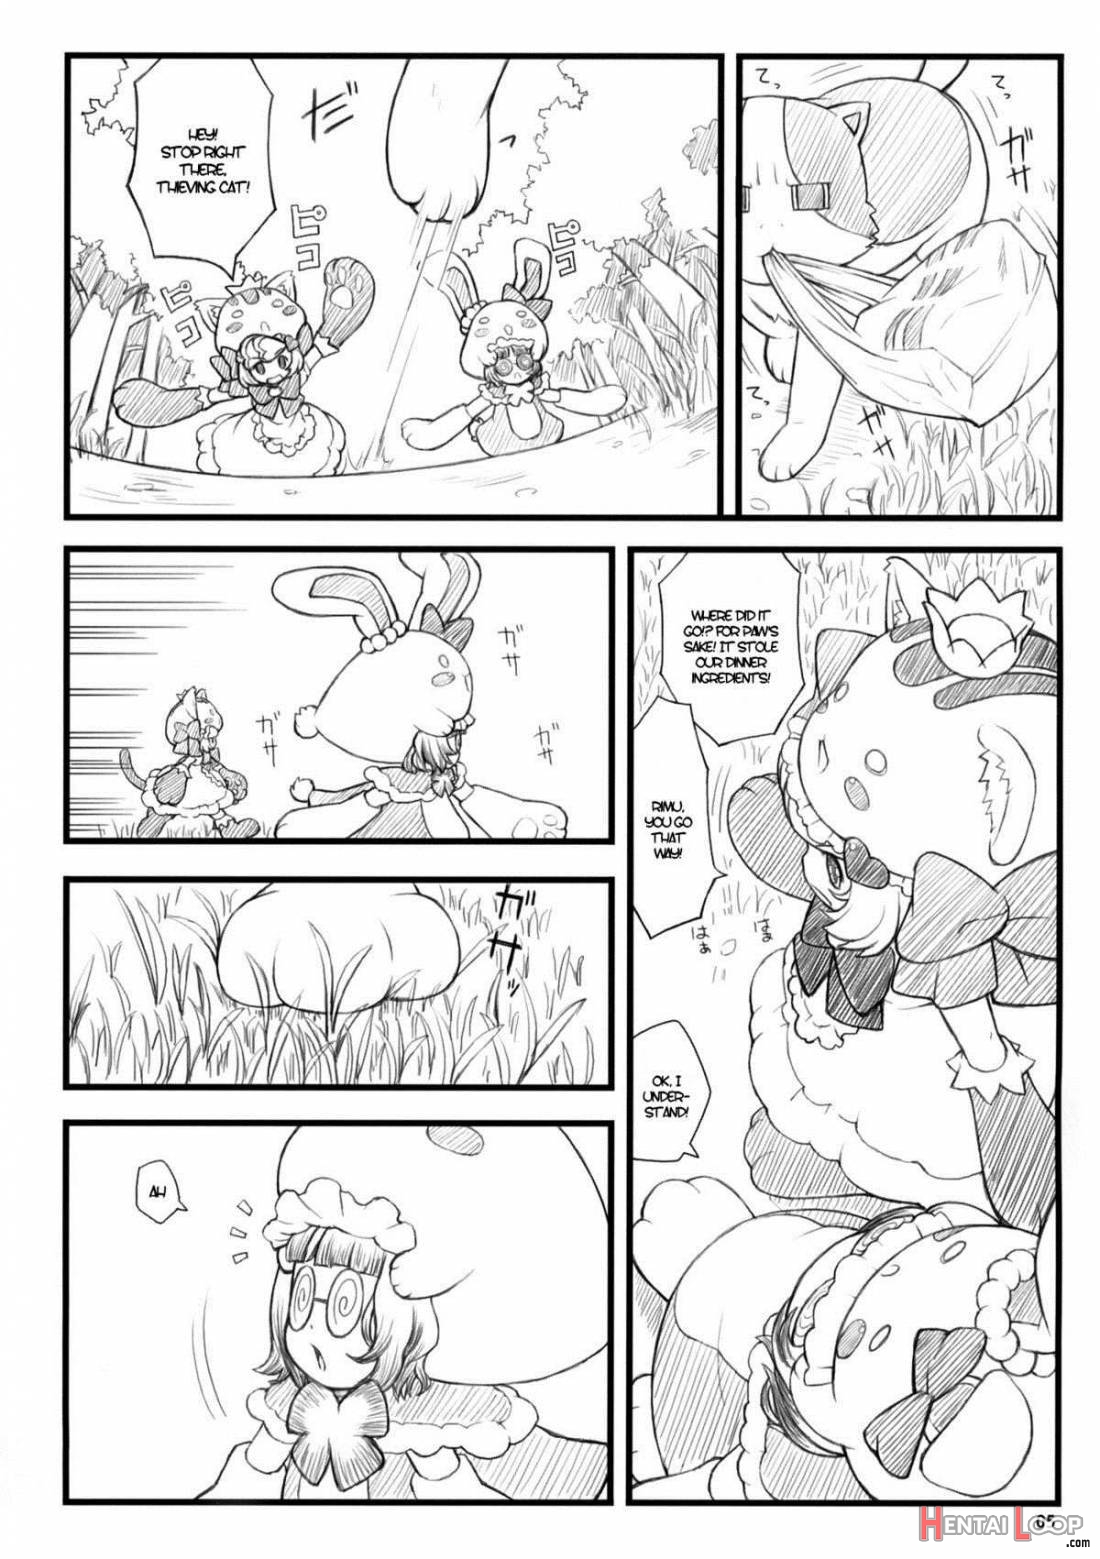 09 winter Ki page 3